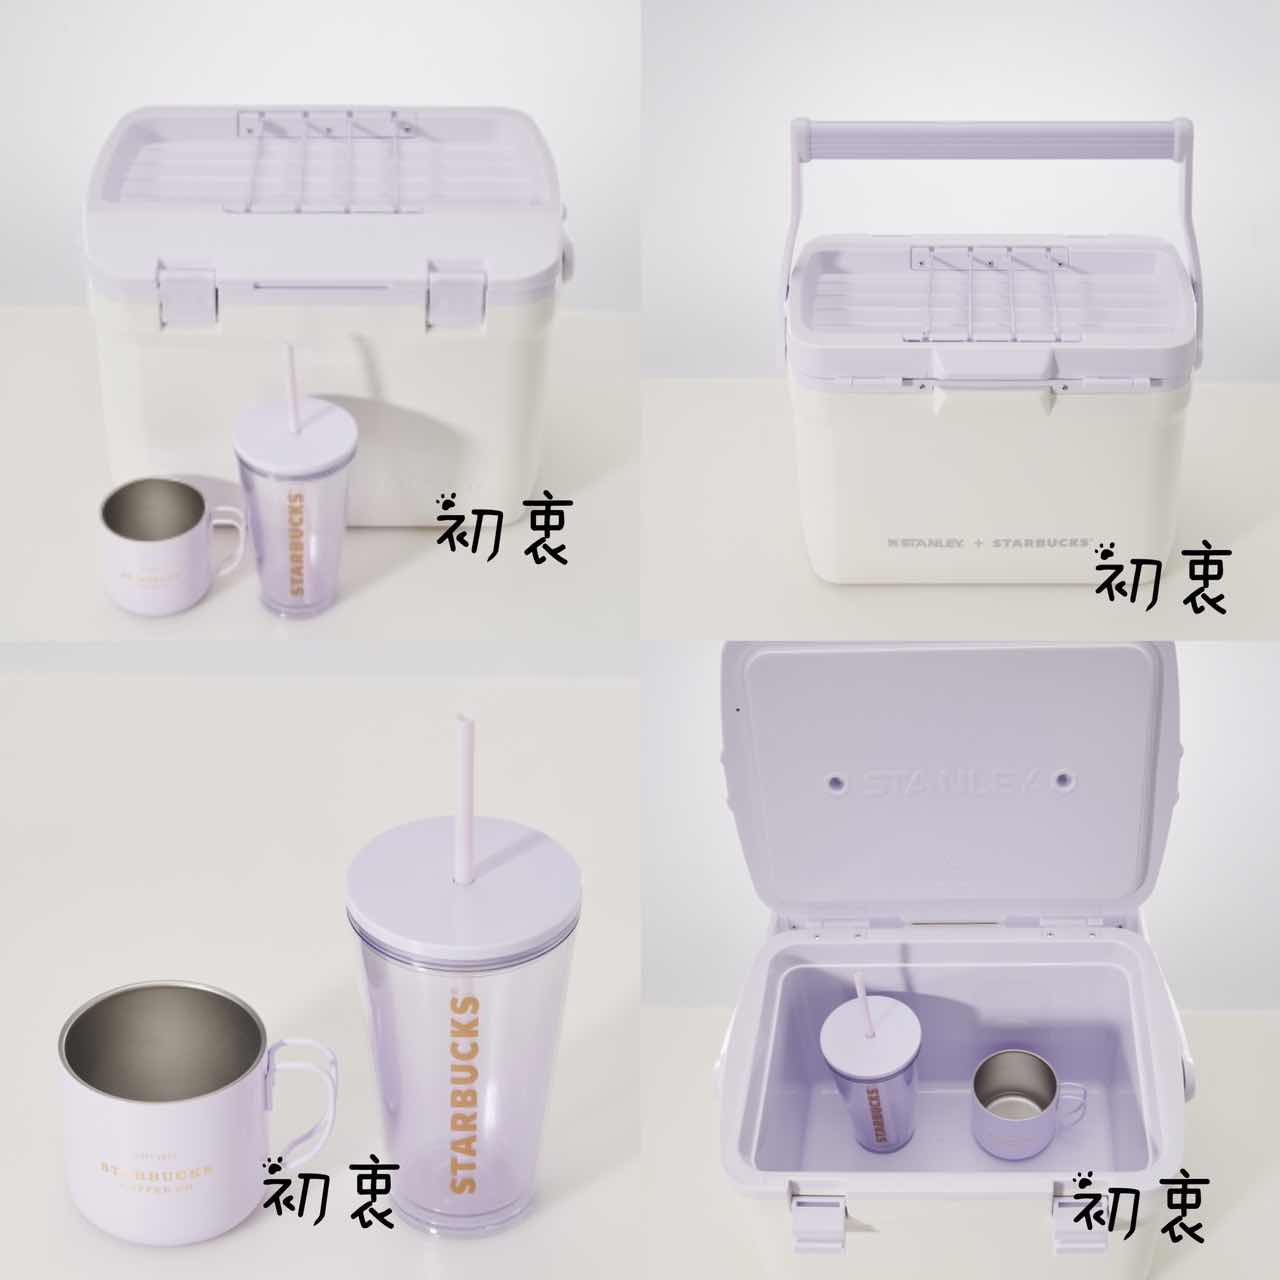 預購商品星巴克海外限定杯子紫色史丹利手提保溫冷藏箱套裝不銹鋼杯/塑料吸管杯